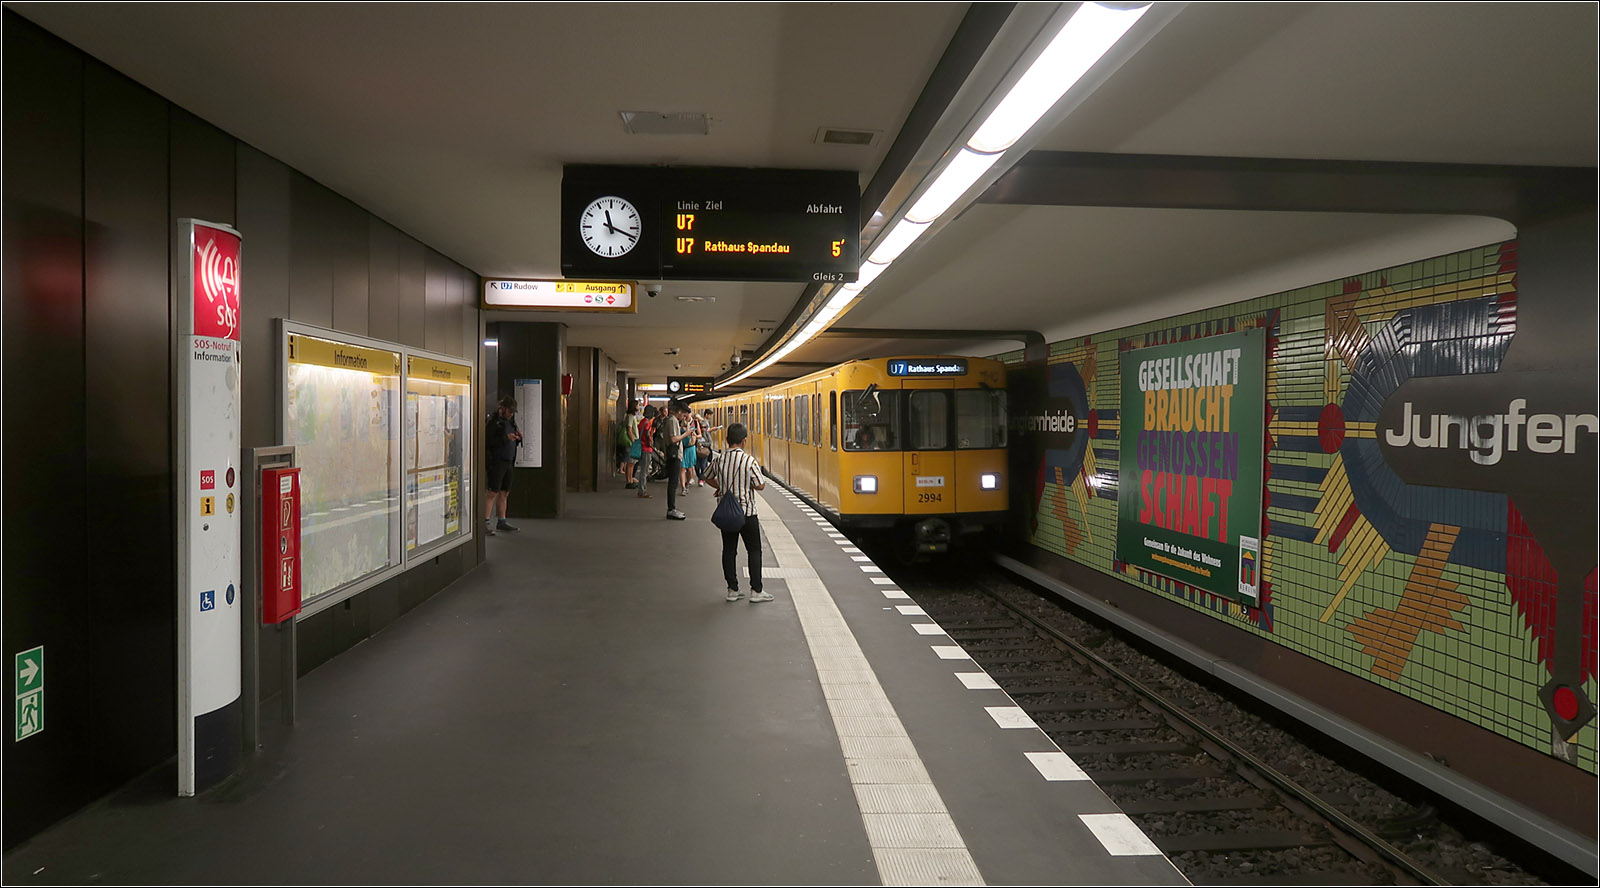 Geheimnisse der Berliner U-Bahn - 

Viergleisig und doppelstöckig ist der Bahnhof Jungfernheide der U7. Der Bahnhof ist für eine weitere Linie vorbereitet. Hier könnte eine vom Hauptbahnhof über den U9-Bahnhof Turmstraße verlaufende verlängerte U5 ein bahnsteiggleiches Umsteigen zur U7 ermöglichen. Eine Weiterführung der U5 in Richtung Tegel wäre denkbar.
Die beiden Linien würden sich hier nur aufeinandertreffen aber nicht kreuzen, vergleichbar mit der U-Bahnstation Plärrer in Nürnberg. 
Die am 1. Oktober 1980 eröffnete Station bietet oben auch Anschluss an die Ringstrecke der S-Bahnhof.
Blick in den unteren Bahnsteig mit einem Zug in Fahrtrichtung Rathaus Spandau.

14.07.2023 (M)